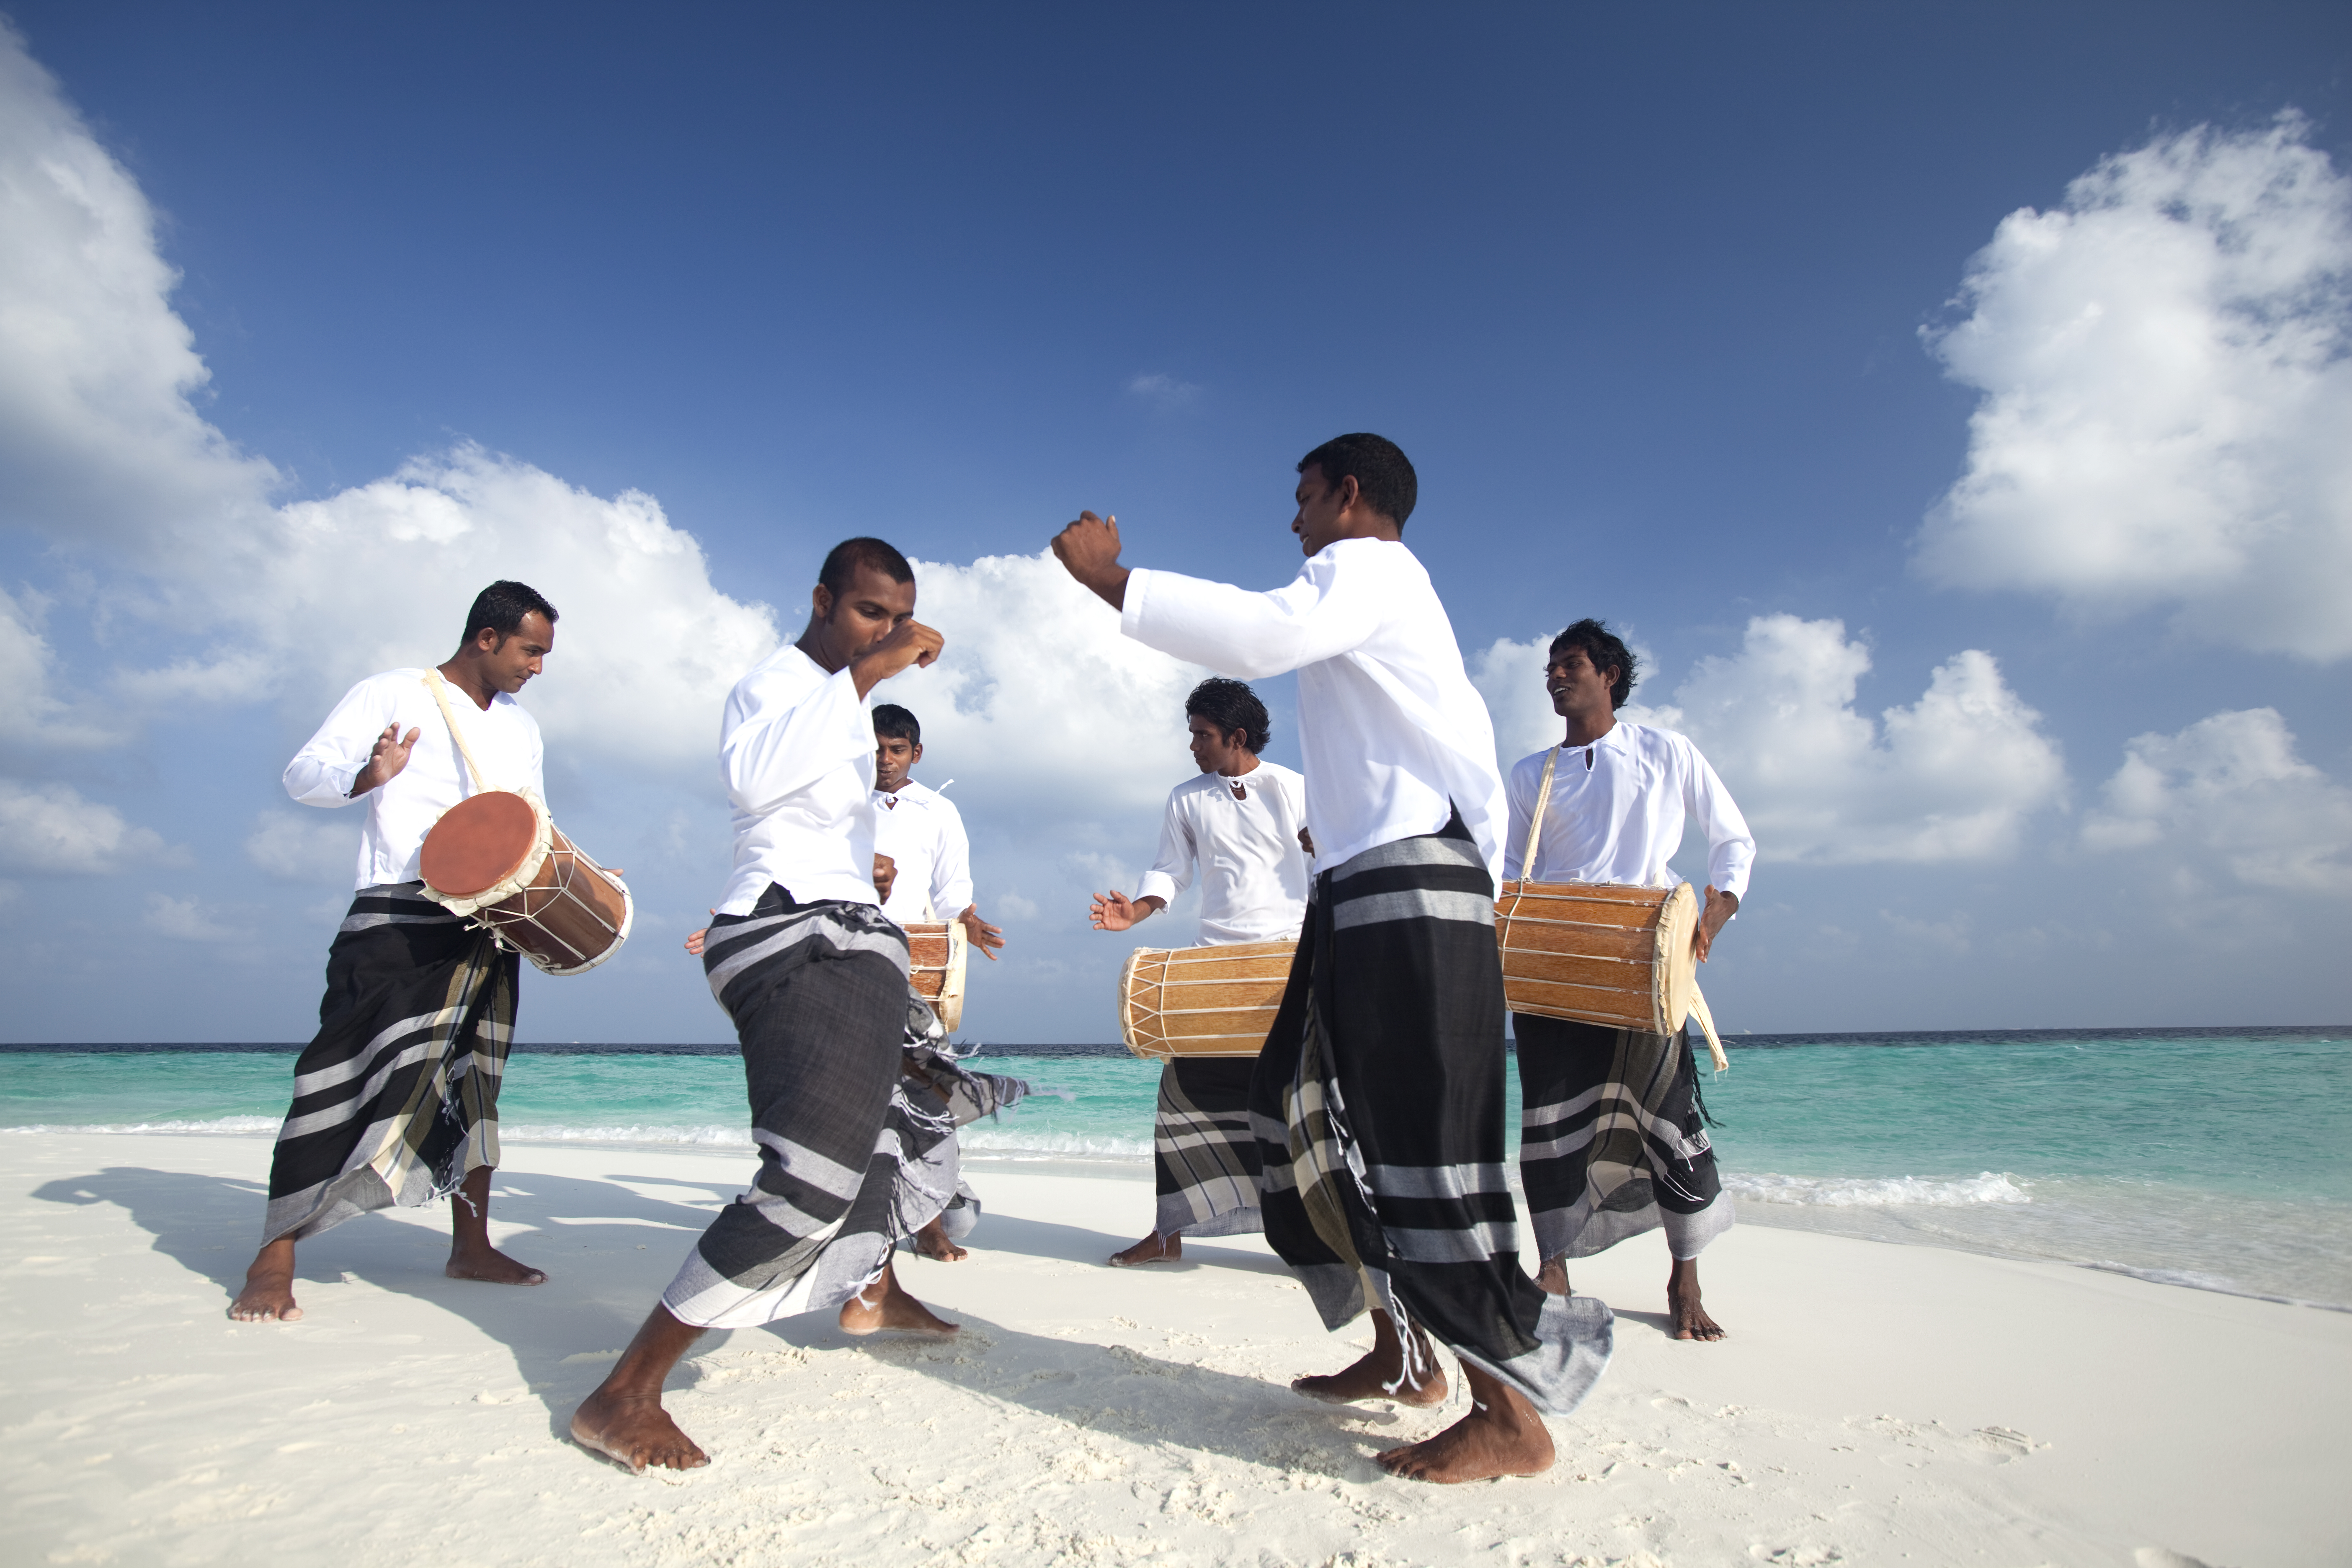 Unique culture. Мальдивы люди, культура, традиции. Мальдивы Национальная одежда. Мальдивы танцы. Мальдивы местные жители.